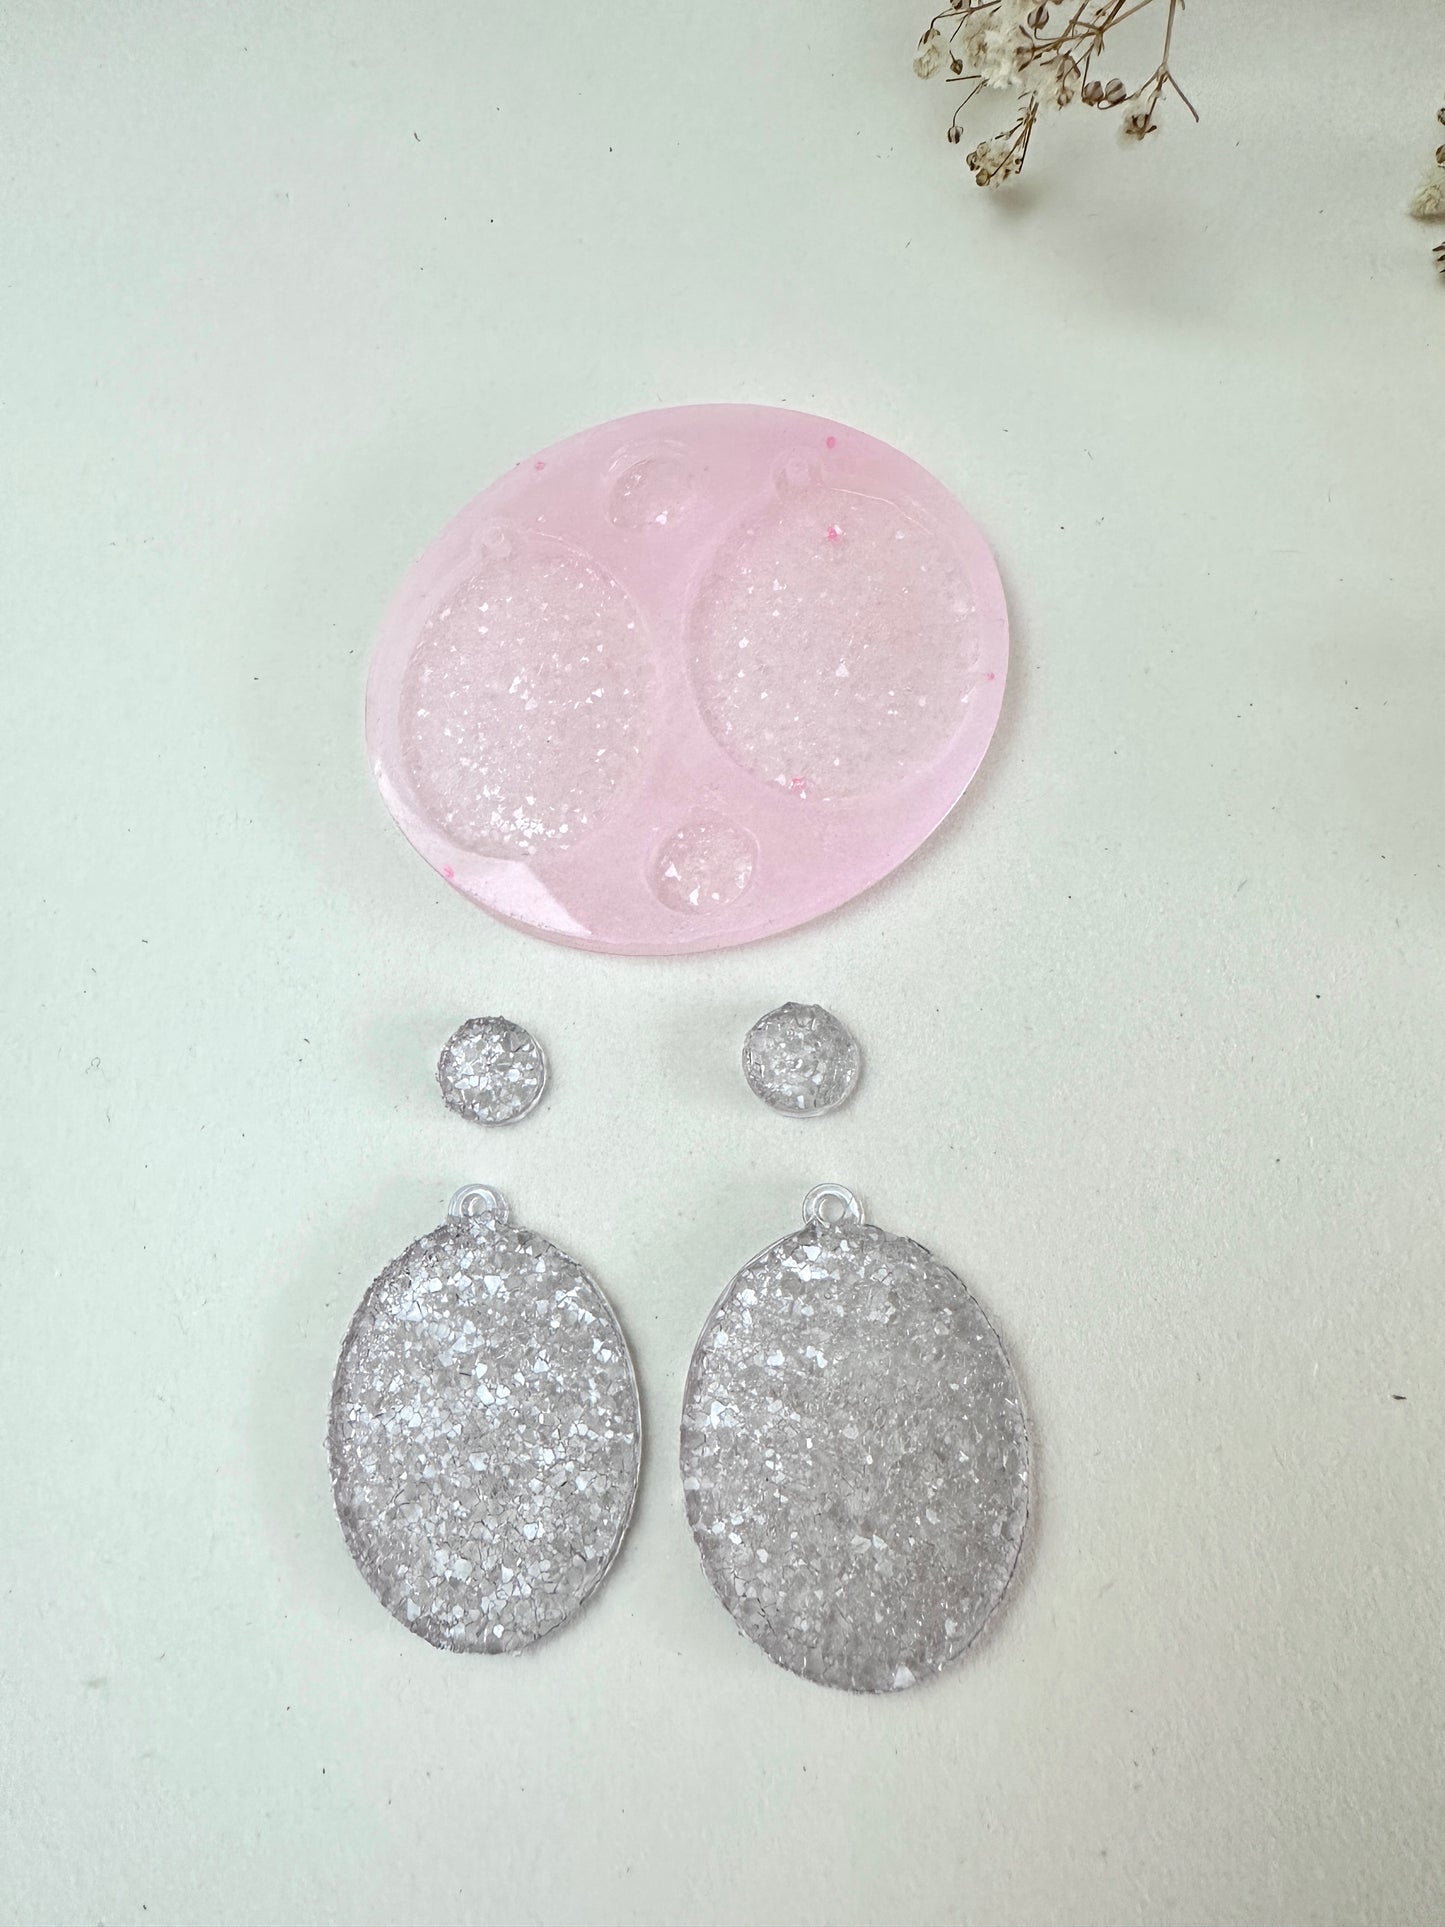 Набор сережек со сверкающими кристаллами, силиконовая форма, прочная и простая в использовании, идеально подходит для изготовления уникальных ювелирных подарков